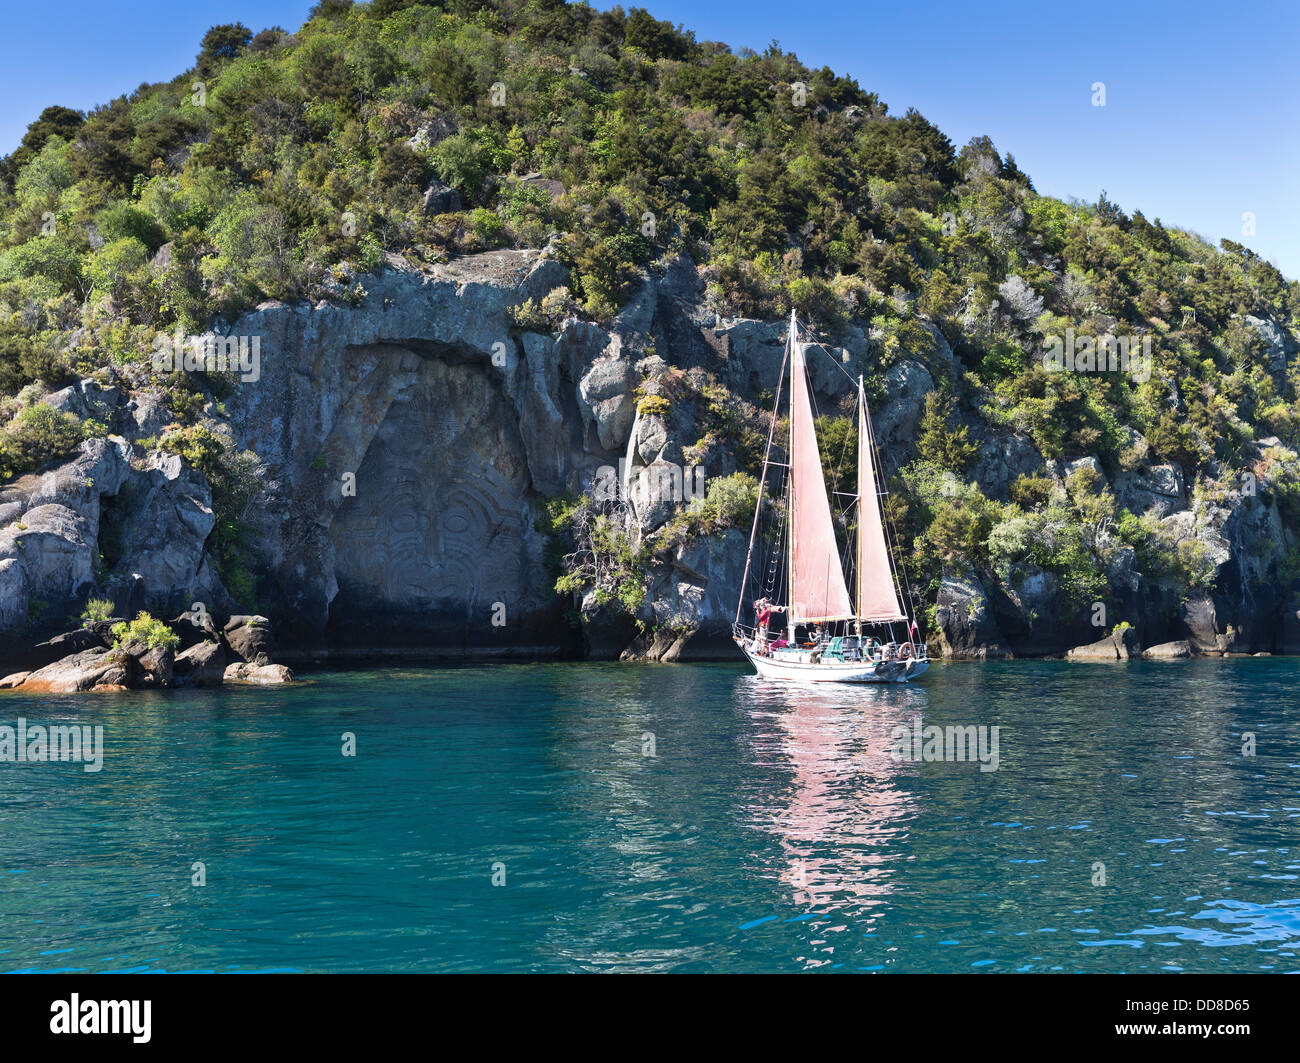 Dh Maori felsenschnitzen Lake Taupo Neuseeland offenes Segelboot reise Touristen Tourismus Sightseeing Tour Stockfoto